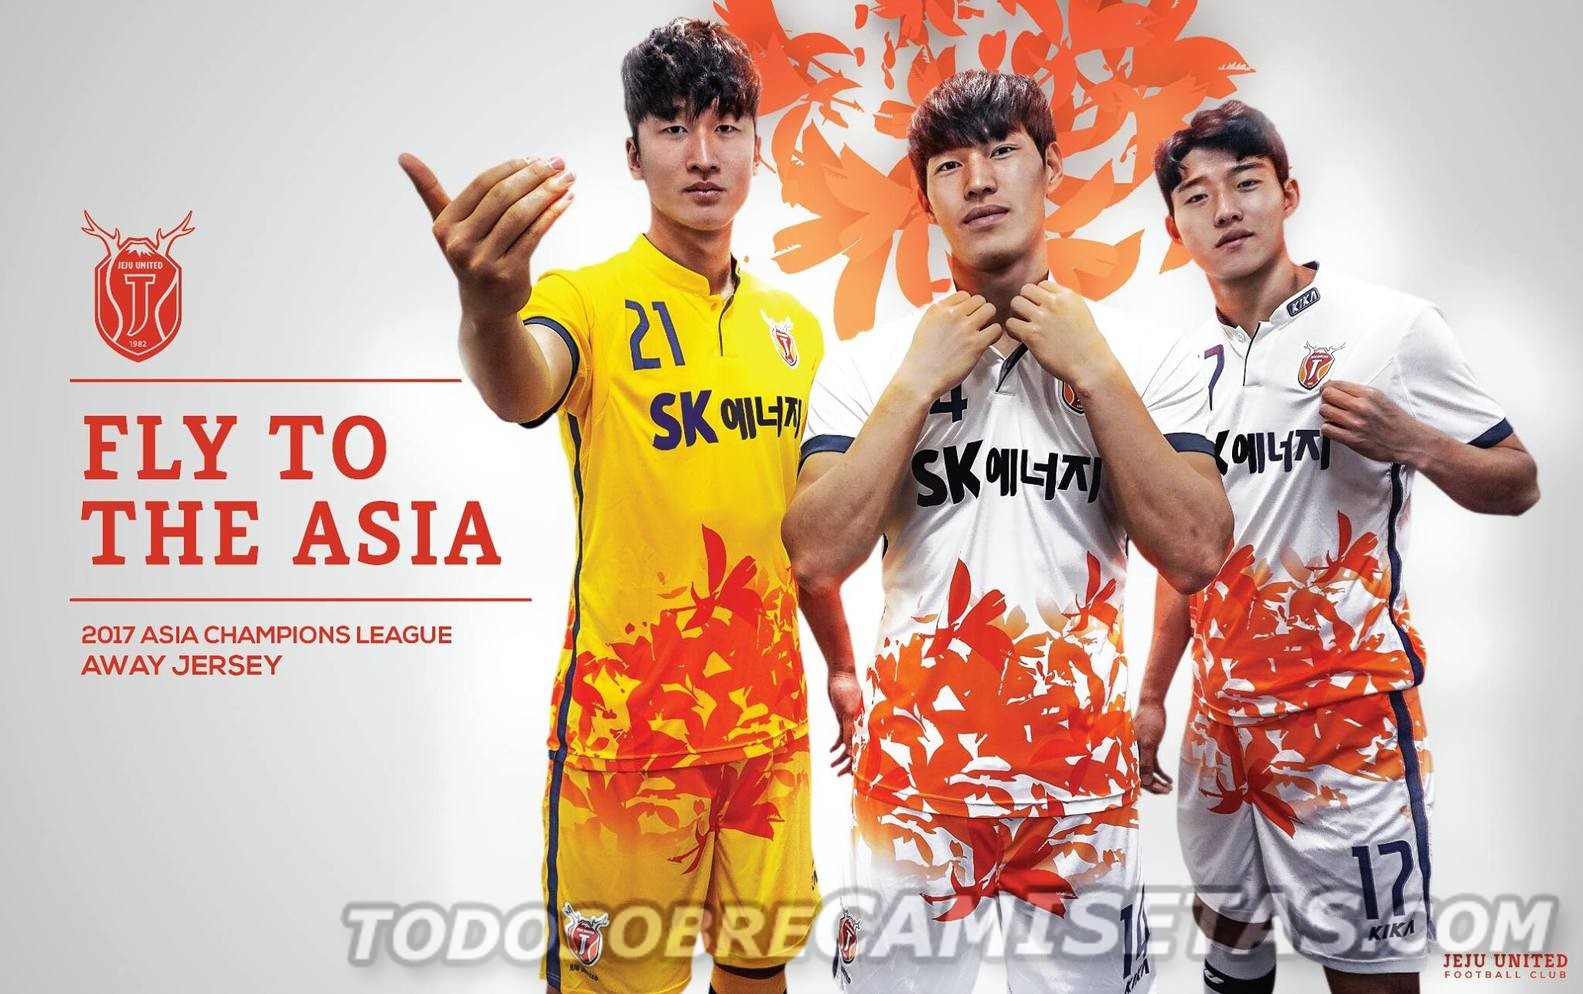 Esta vez pasamos al futbol koreano donde el JEJU UNITED presentó su nueva indumentaria marca Kika con las cuales disputara la Liga K, la primera división de Corea del Sur y la Liga de Campeones de Asia.